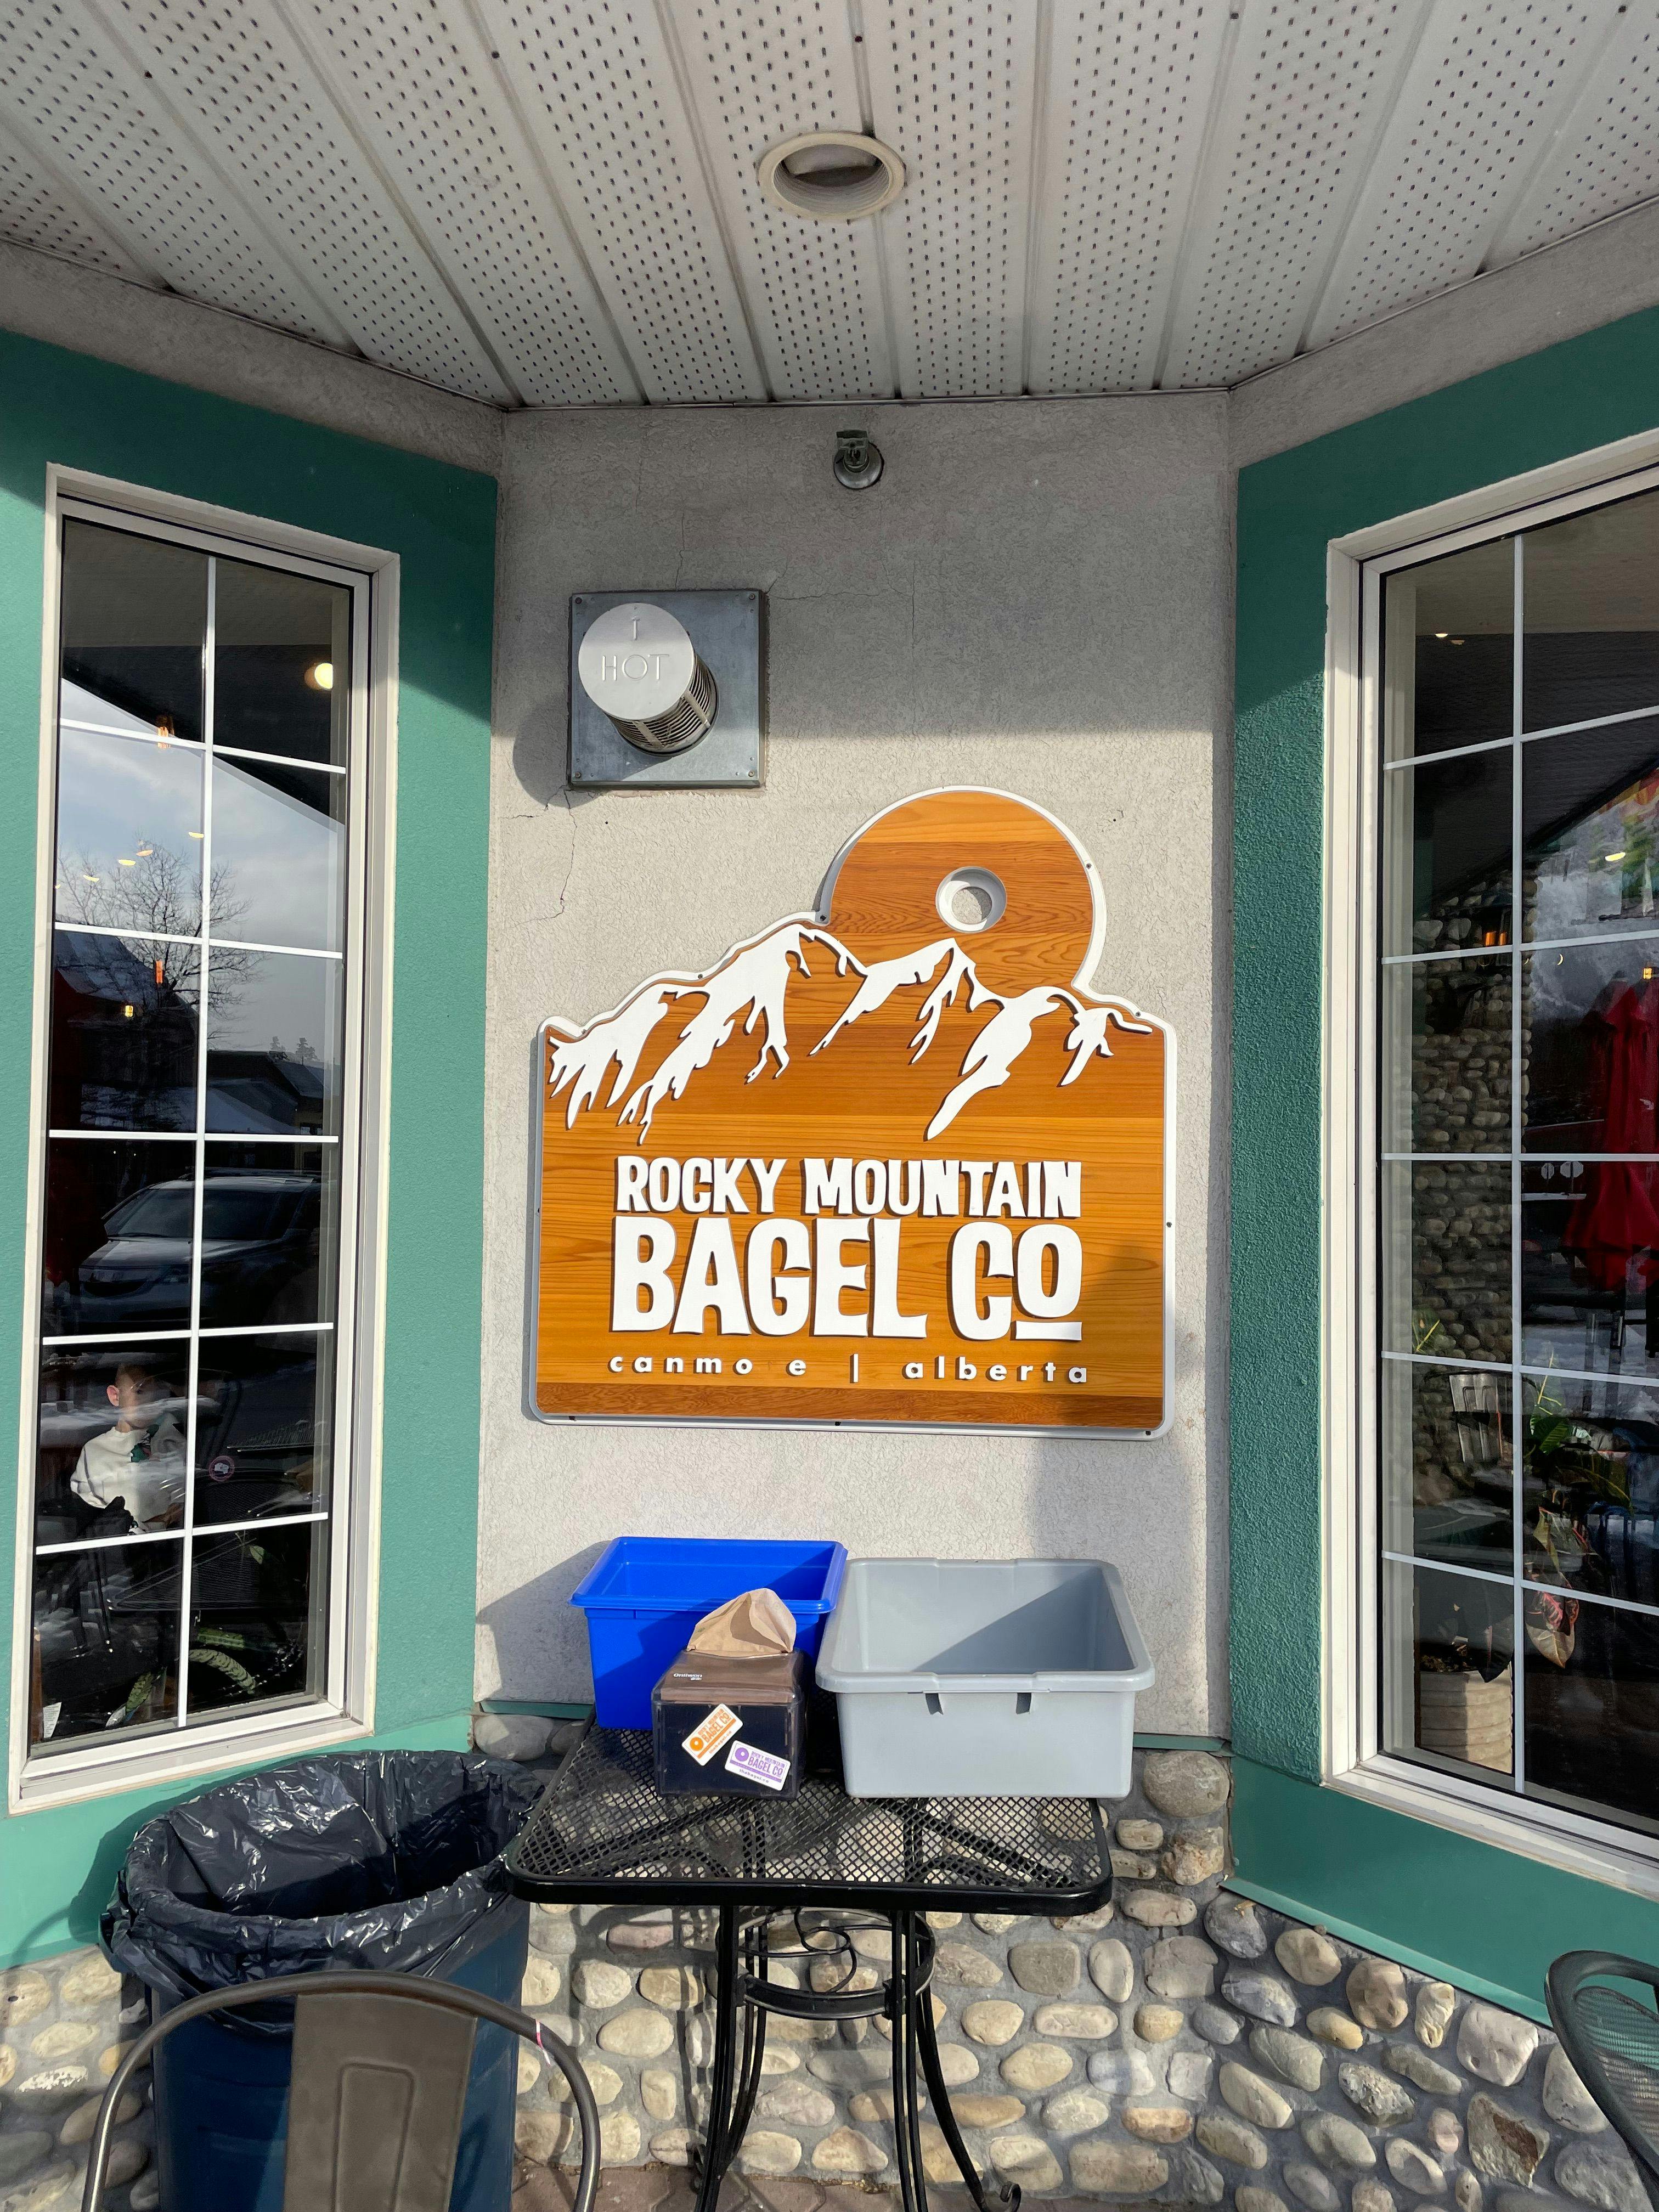 Image 2 of Breakfast: Rocky Mountain Bagel Company.